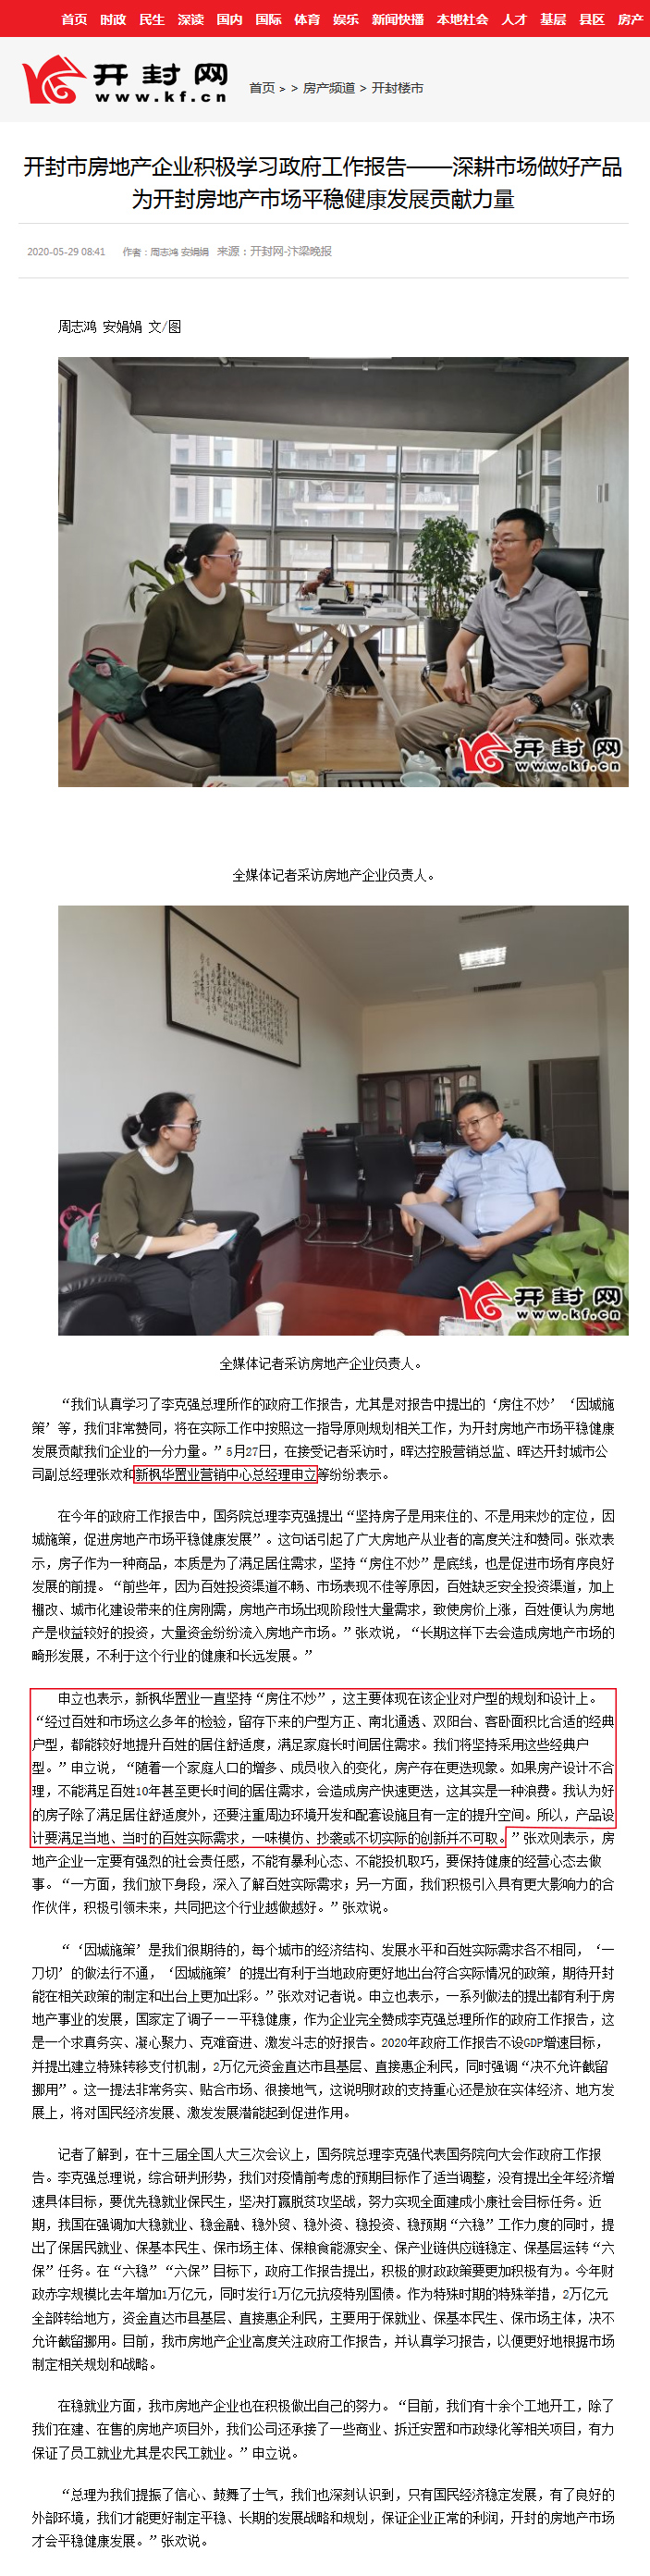 开封网-汴梁晚报采访新枫华置业营销中心总经理申立